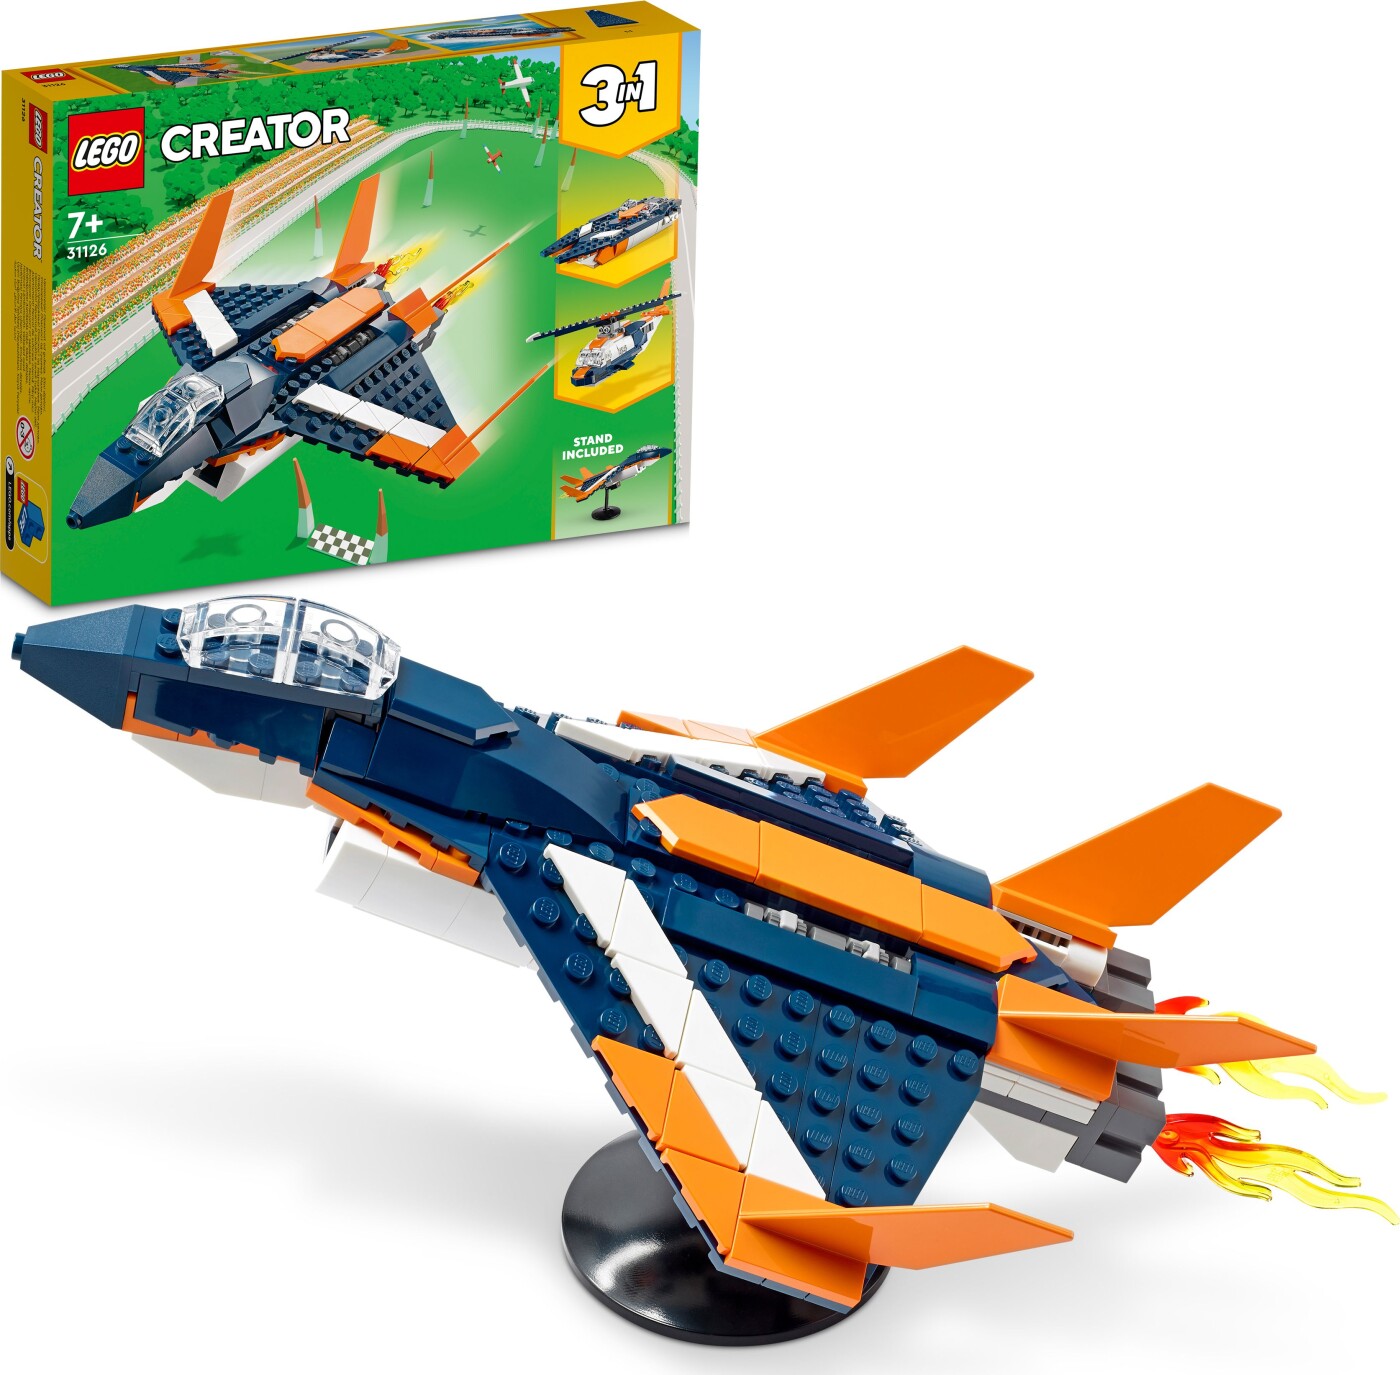 Billede af Lego Creator 3-in-1 - Supersonisk Jet - 31126